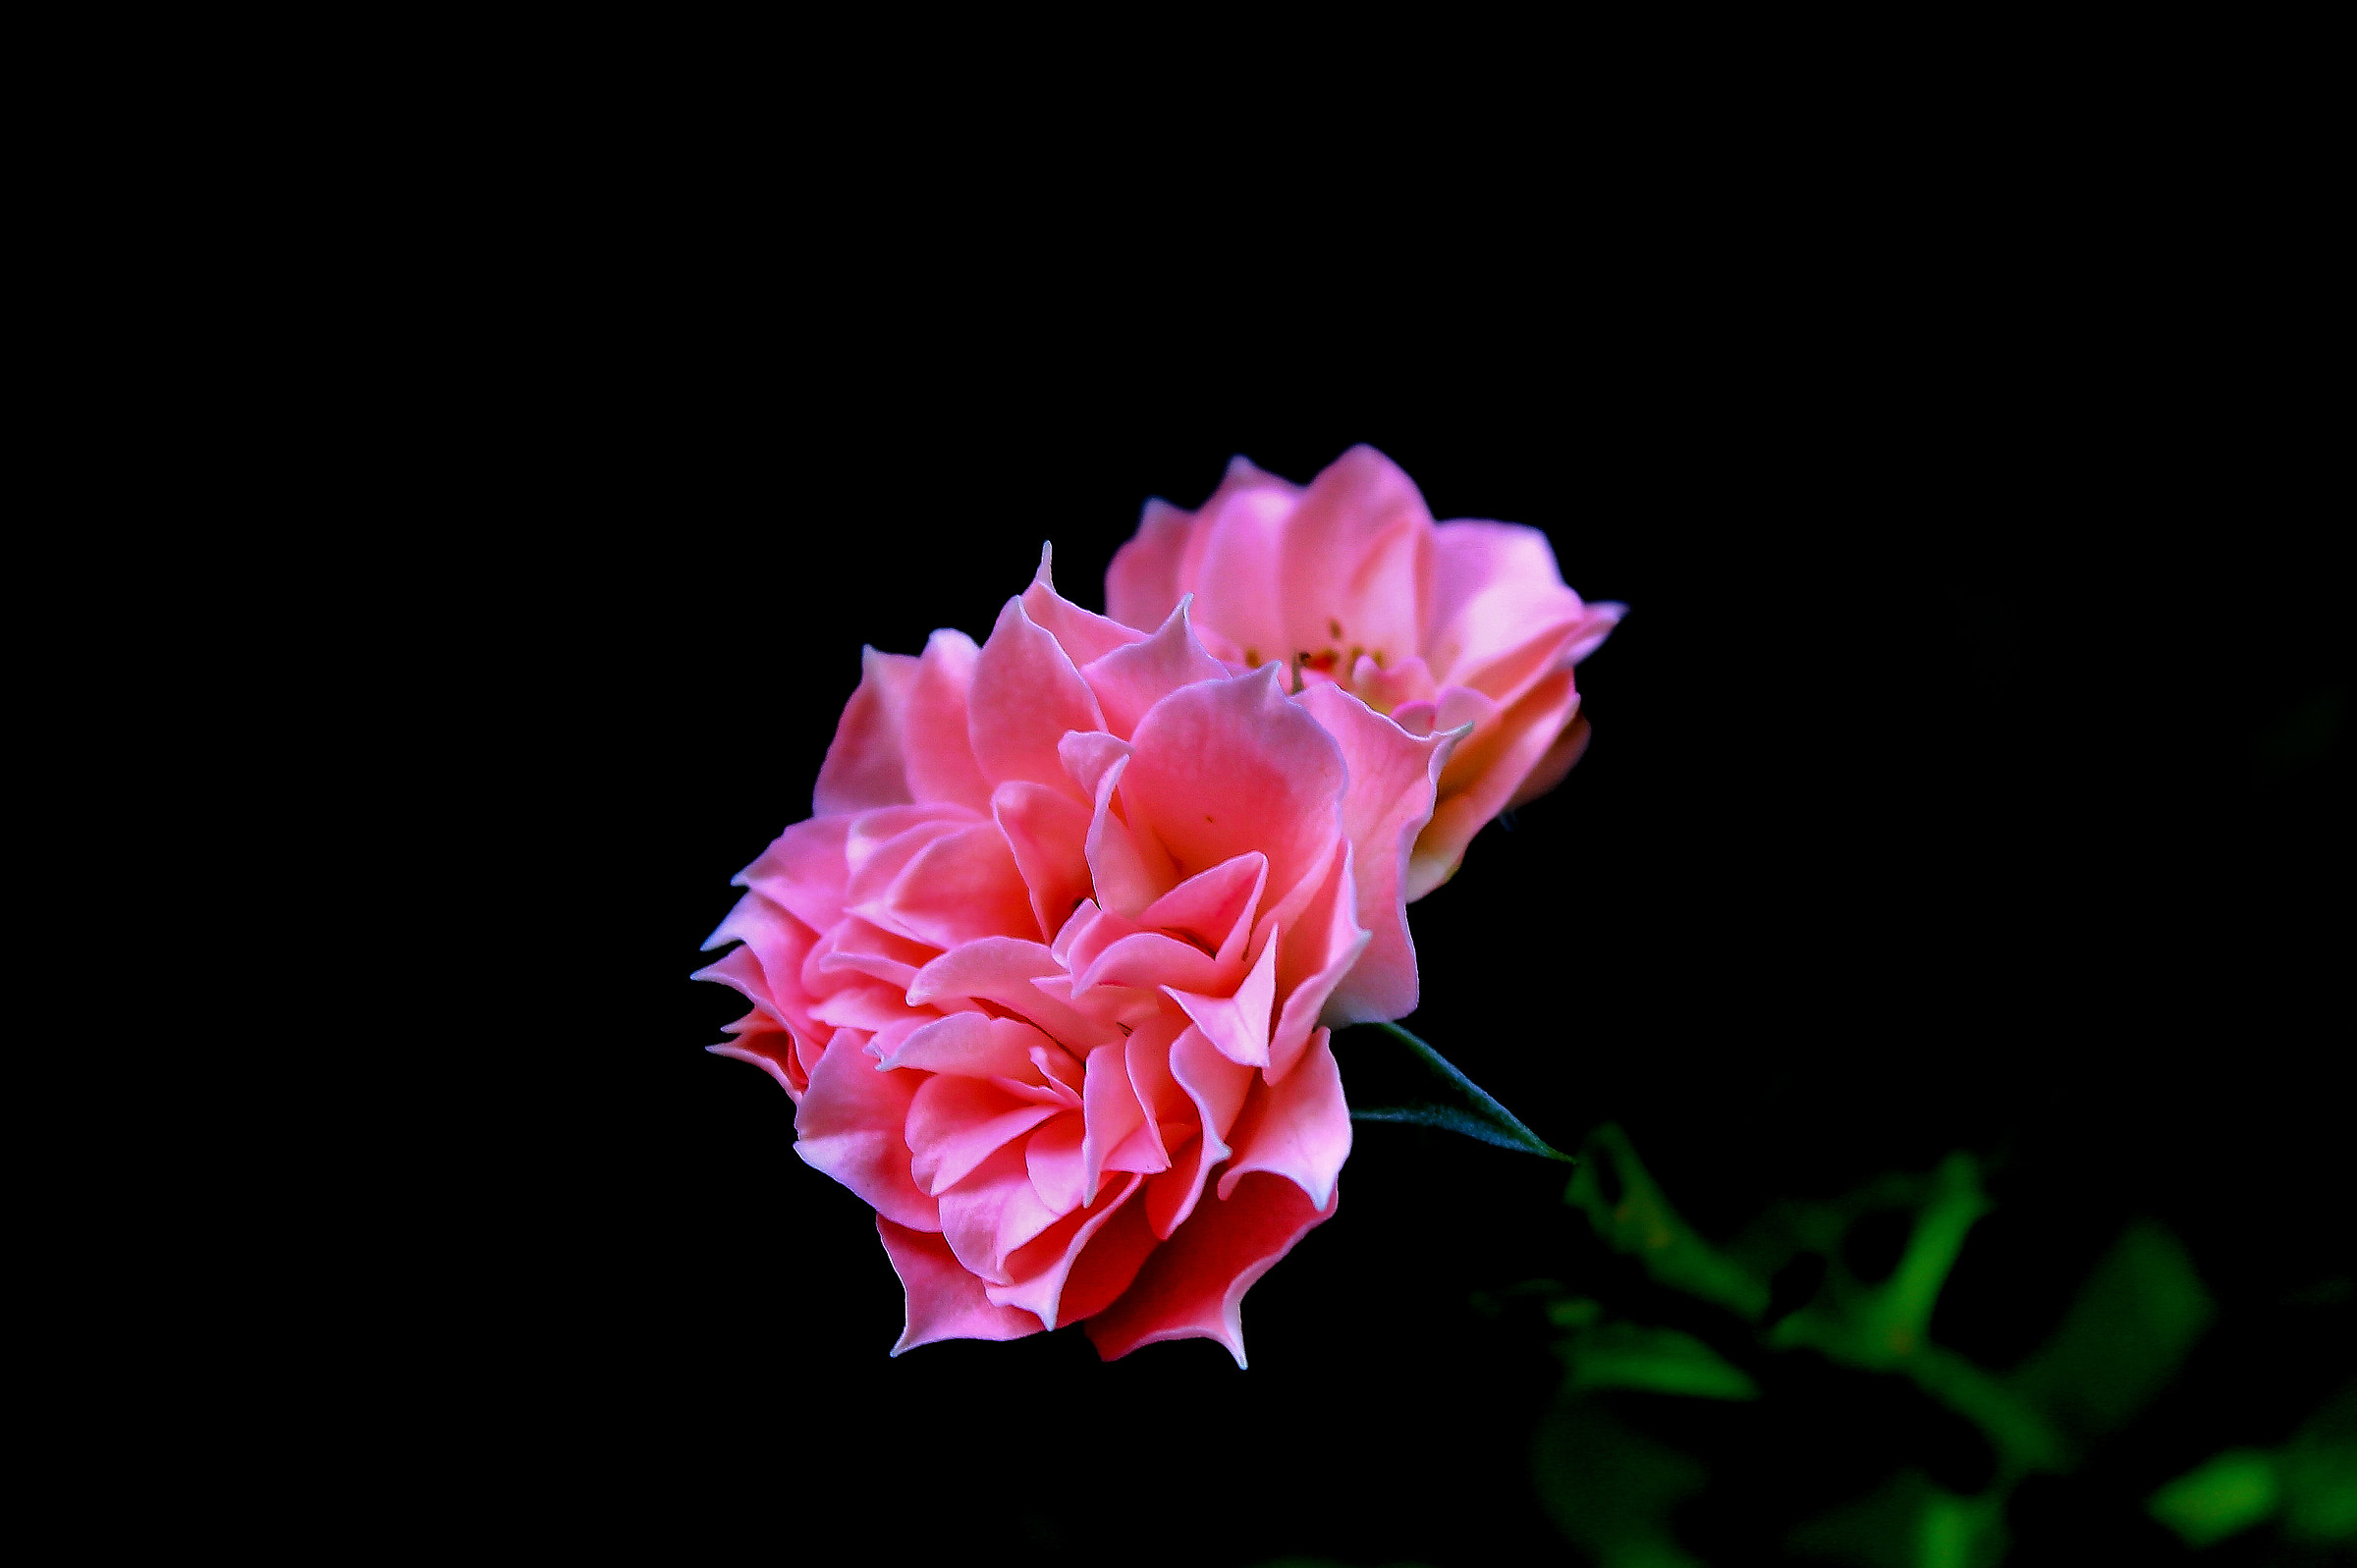 a rose in the dark...